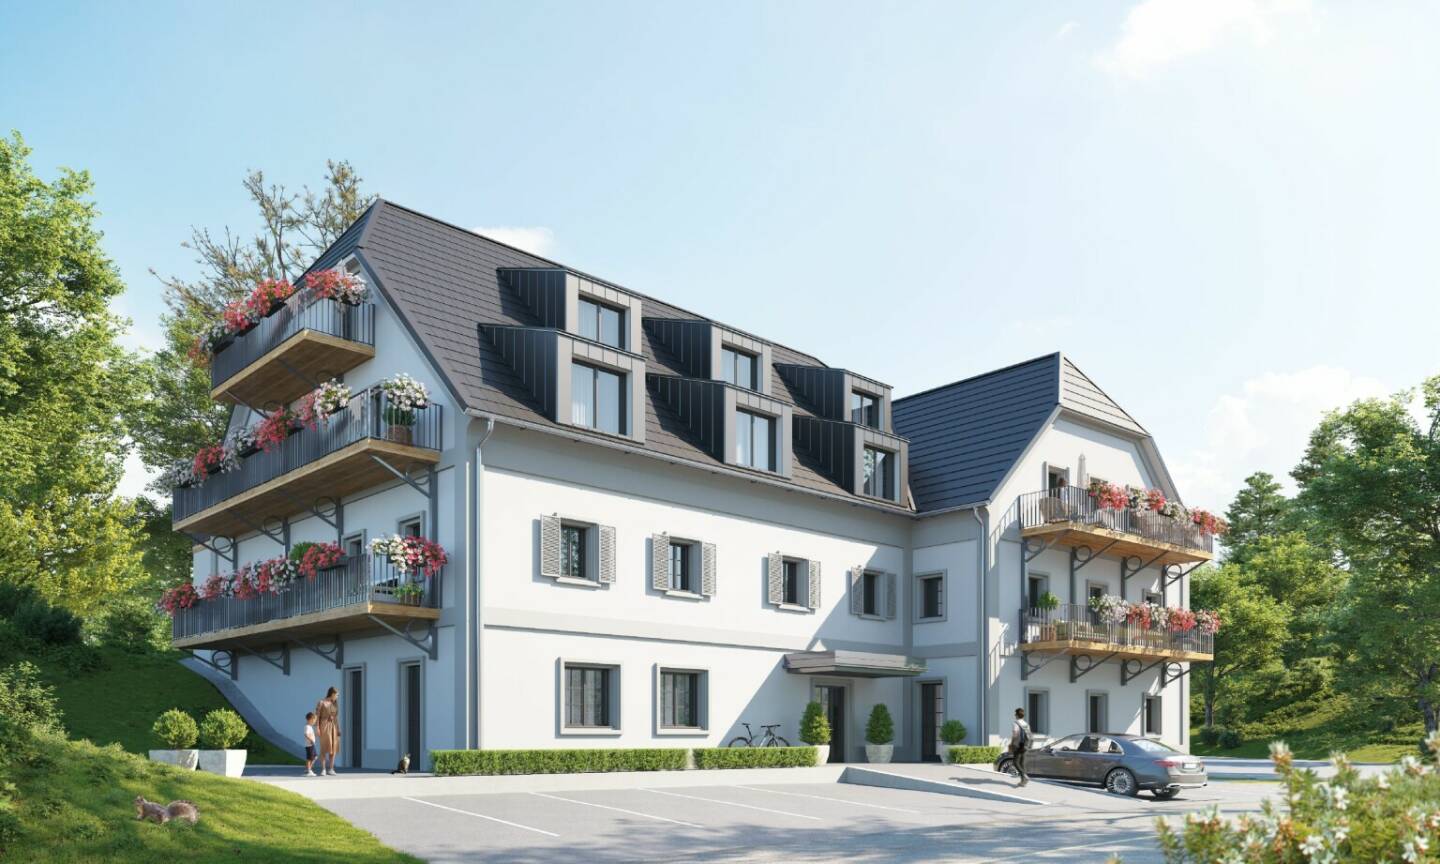 Im historischen Hauensteinhof in St. Kathrein entstehen barrierefreie geförderte Eigentumswohnungen mit Freiflächen, Balkon oder Garten, die sich auf neue Eigentümer:innen freuen. Credit: Austria Real